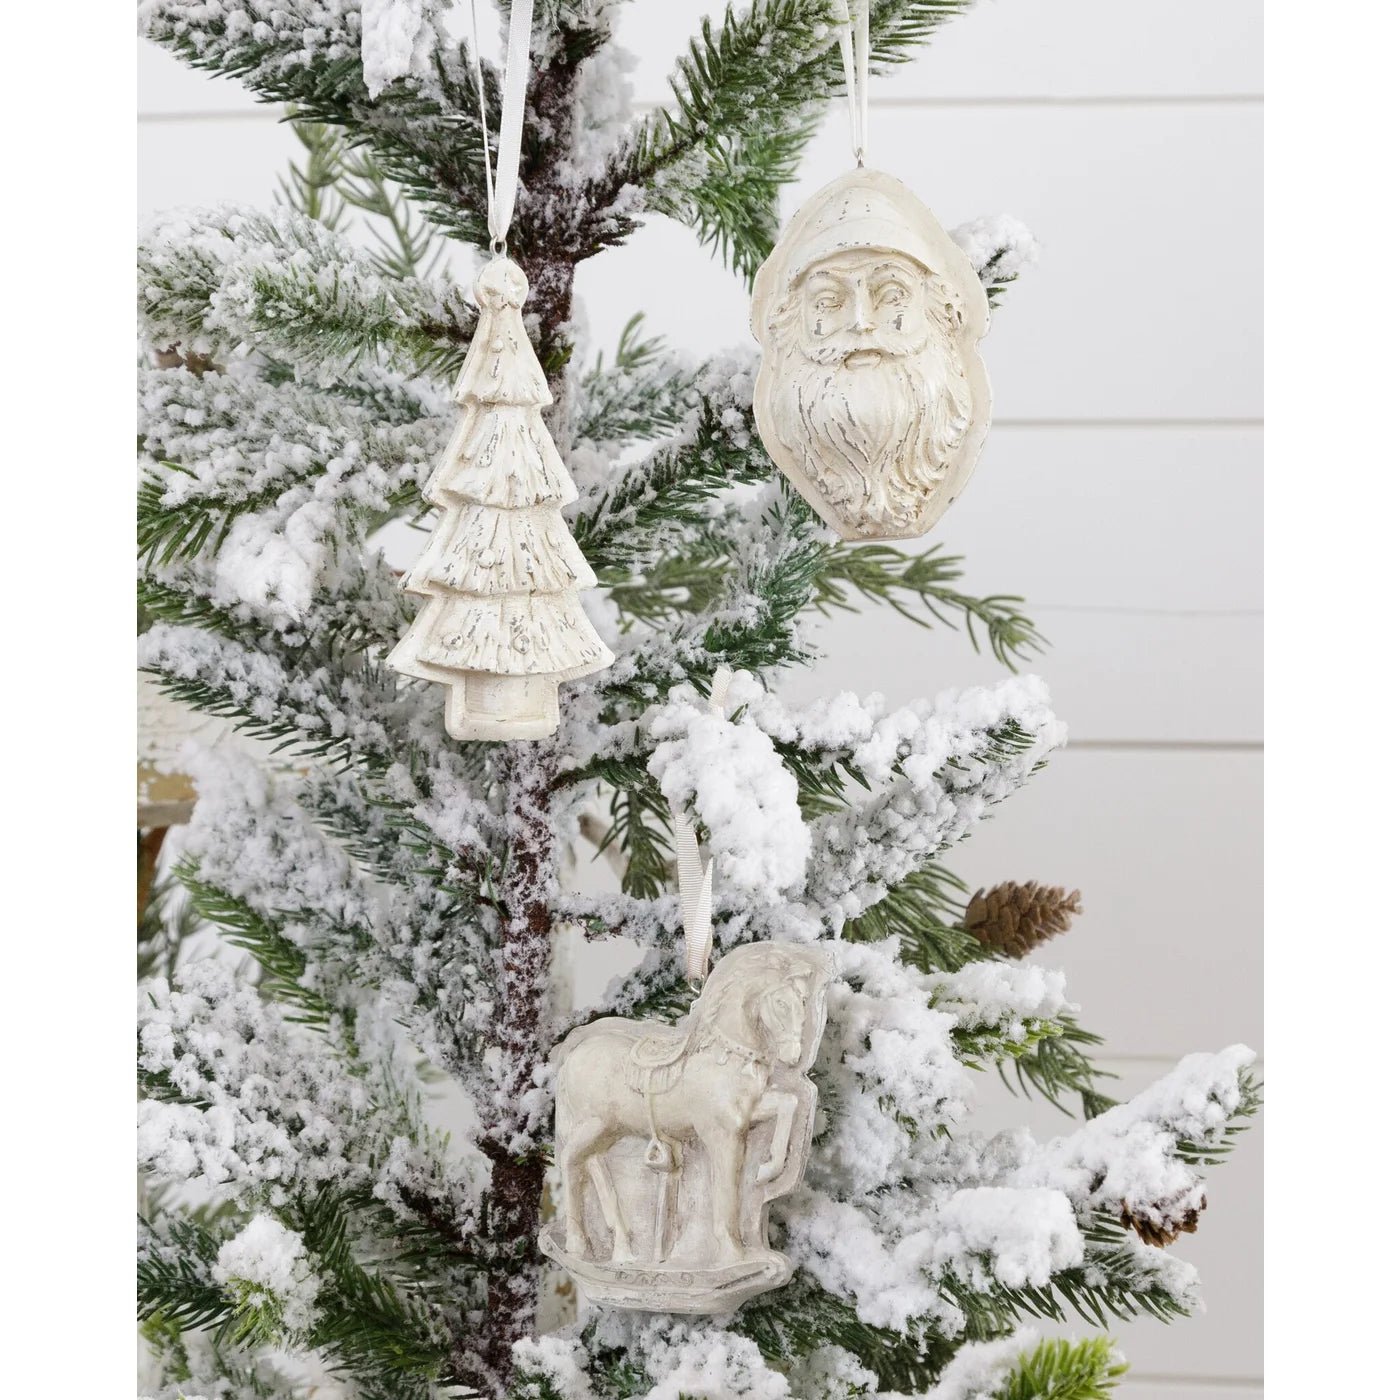 Tree, Santa, Carousal Horse Mold Ornaments